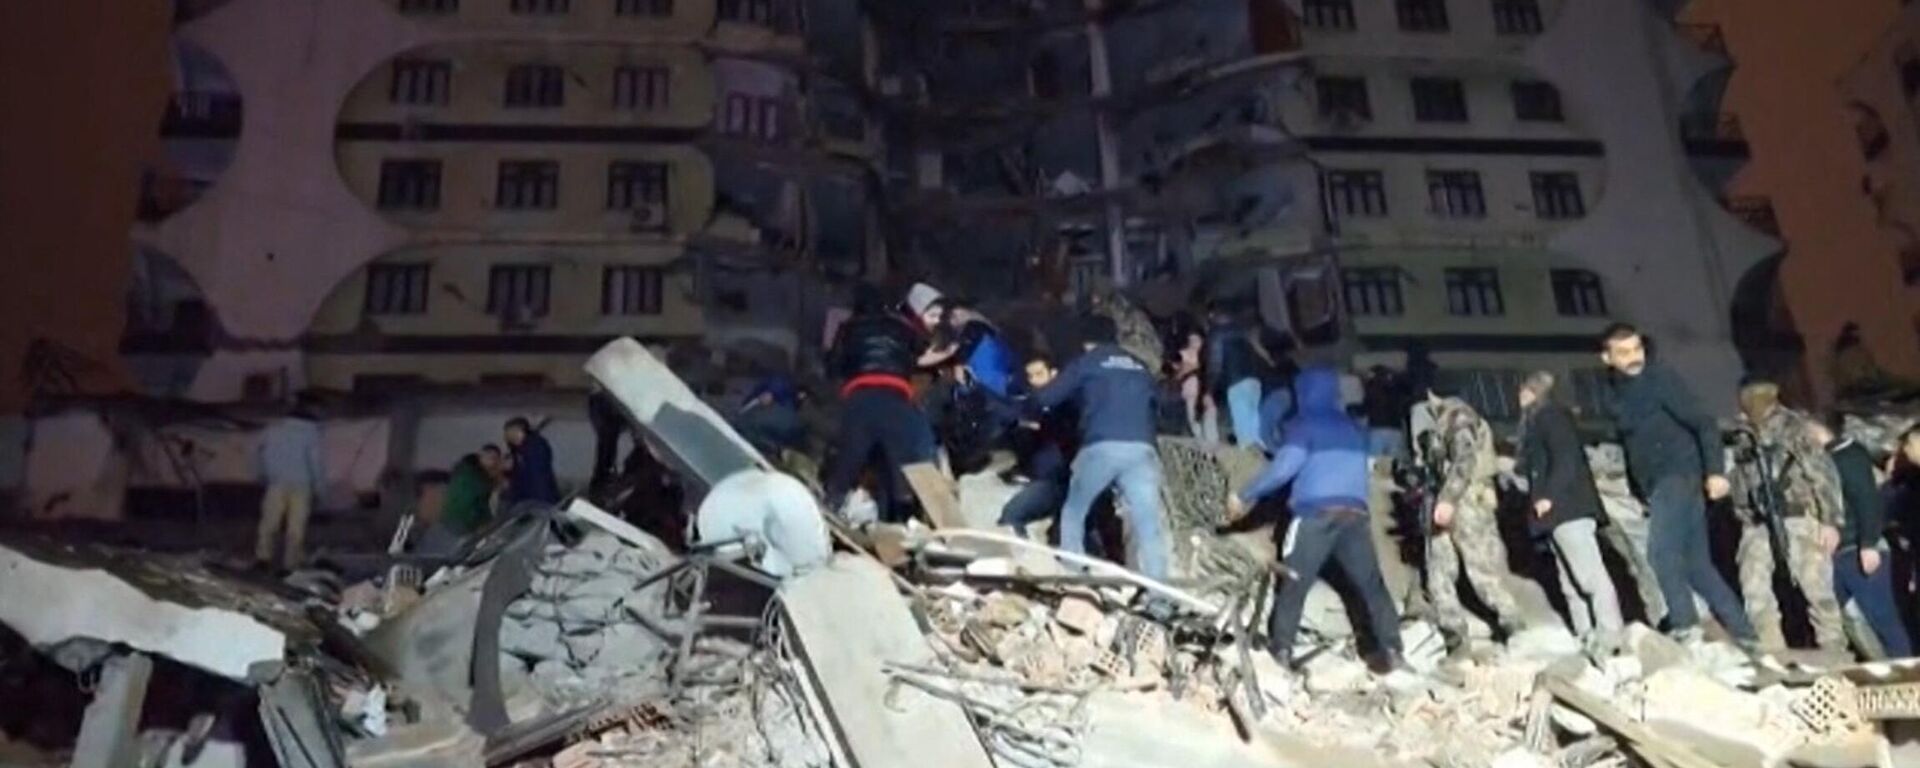 Edificio colapsado en el sismo de 7,8 de Turquía - Sputnik Mundo, 1920, 06.02.2023